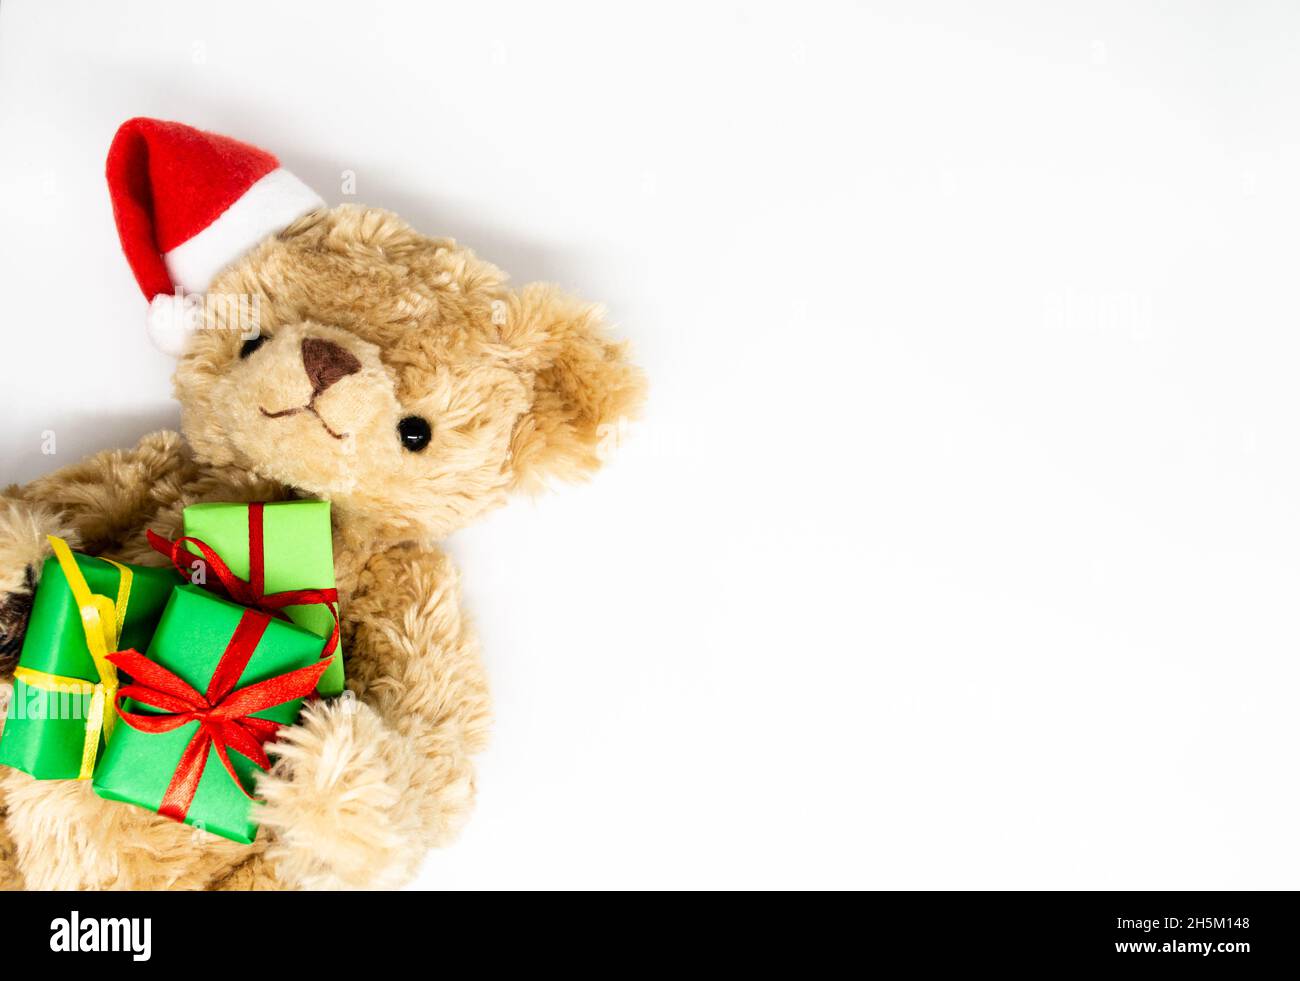 Un orsacchiotto peluche giocattolo in un cappello rosso di Babbo Natale con un pompom su un orecchio, tenendo le scatole regalo verdi nelle sue zampe. Sfondo bianco, spazio di copia. Il co Foto Stock